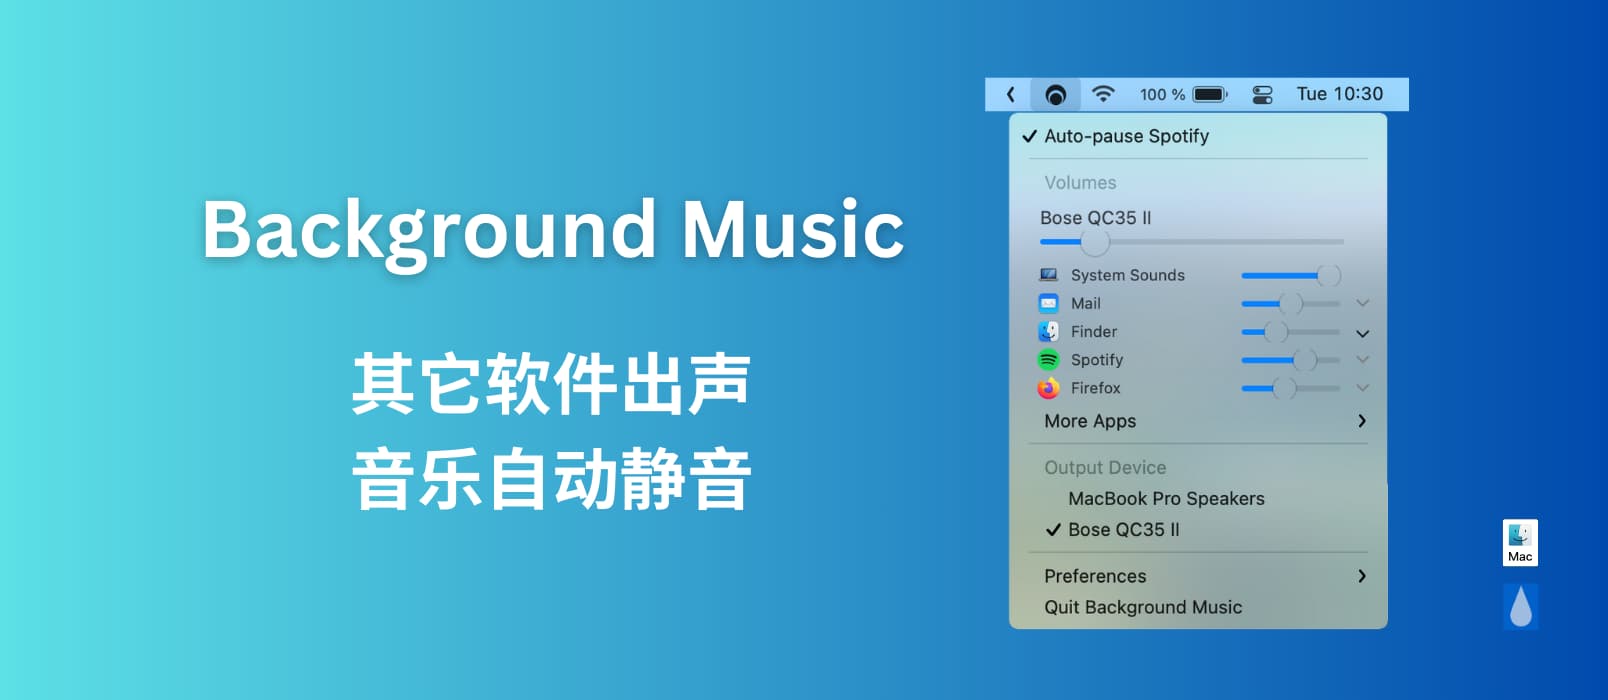 Background Music - 有其它声音时，自动暂停音乐[macOS]